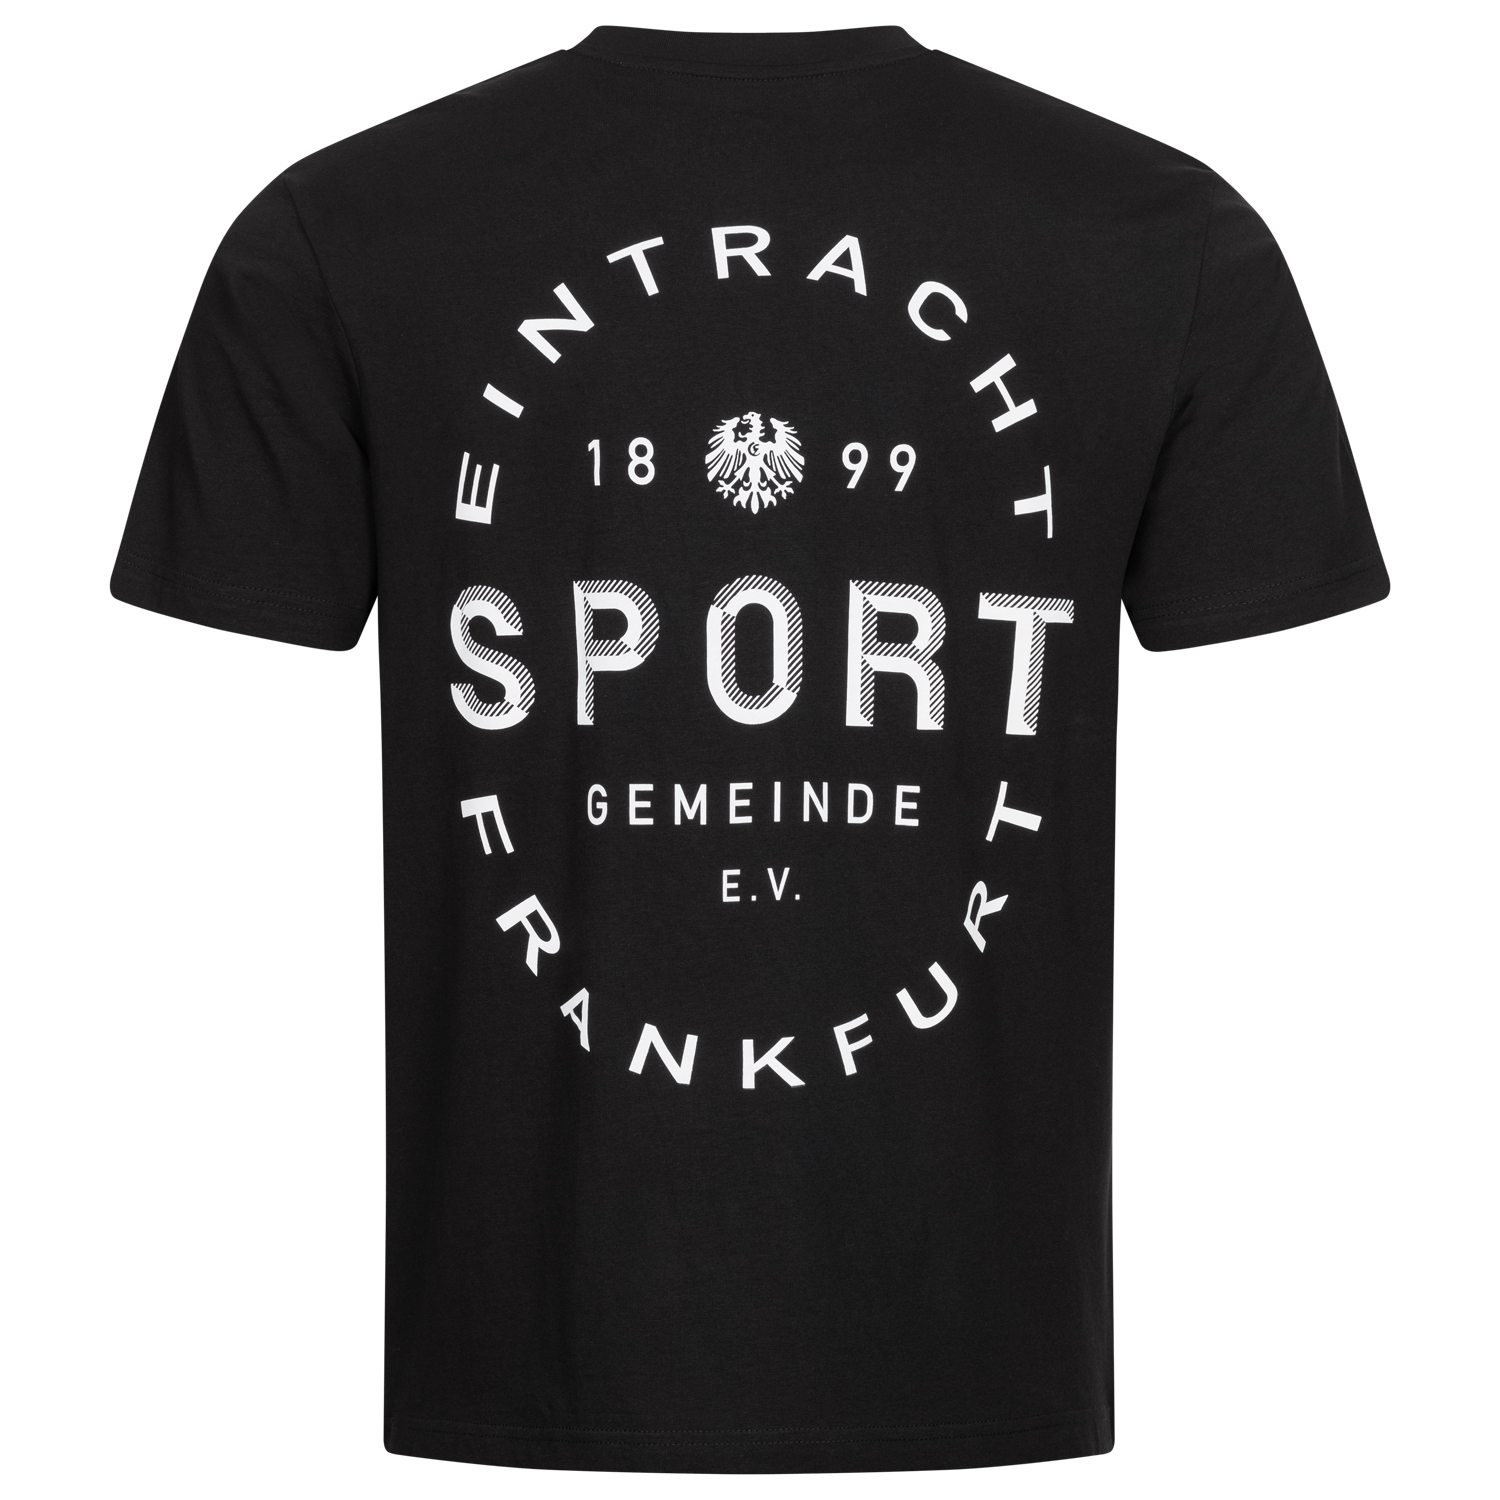 Bild 2: Unisex T-Shirt Sportgemeinde 1899